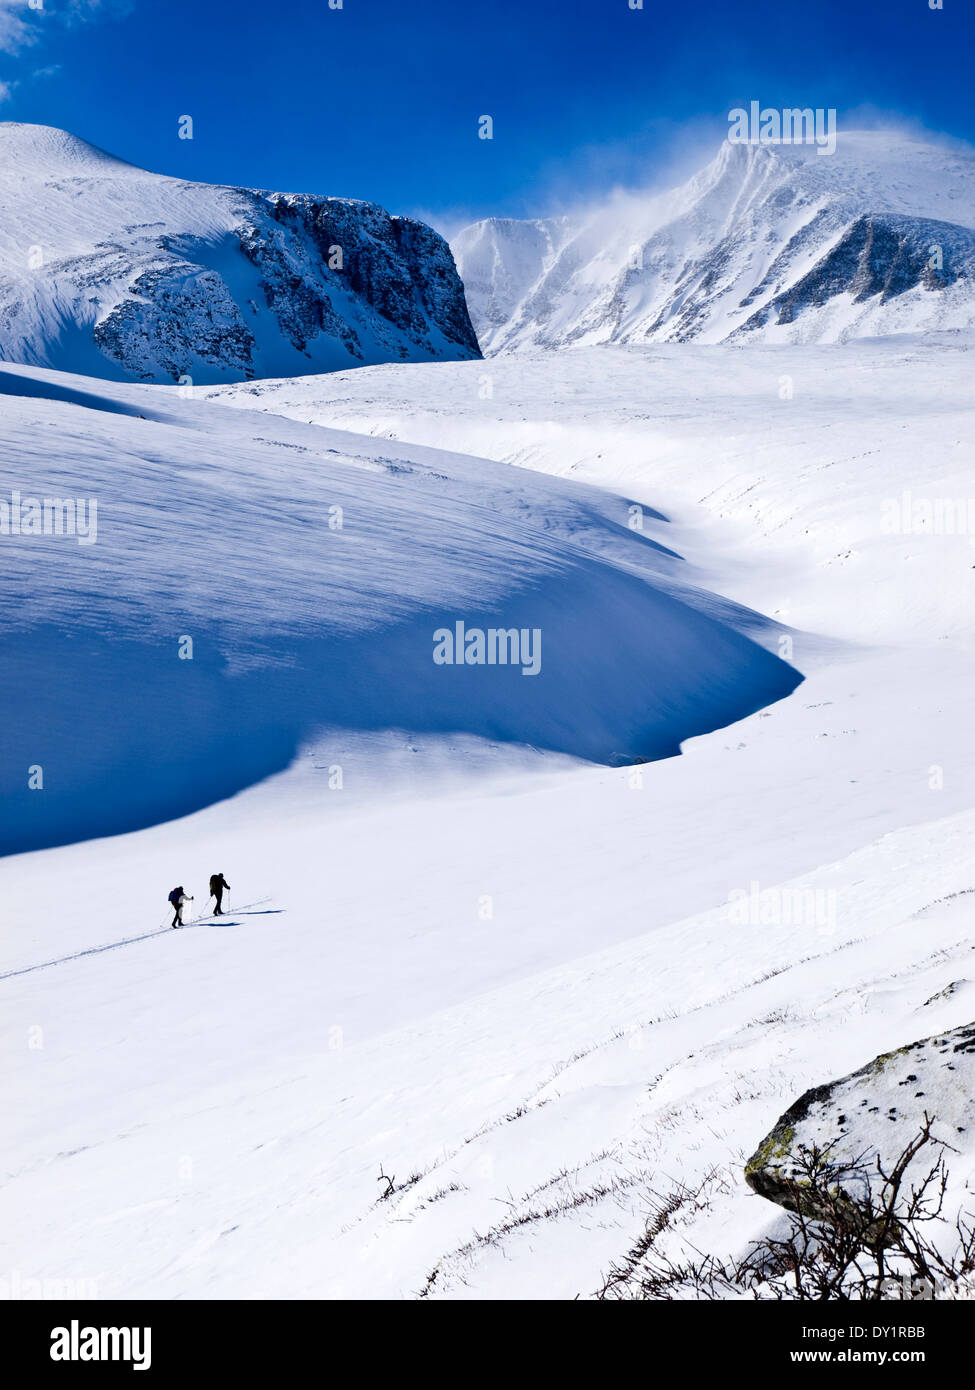 Skitouren in der Rondane, Norwegen. Riesige schneebedeckte Berge zwerg Die zwei Skifahrer Stockfoto